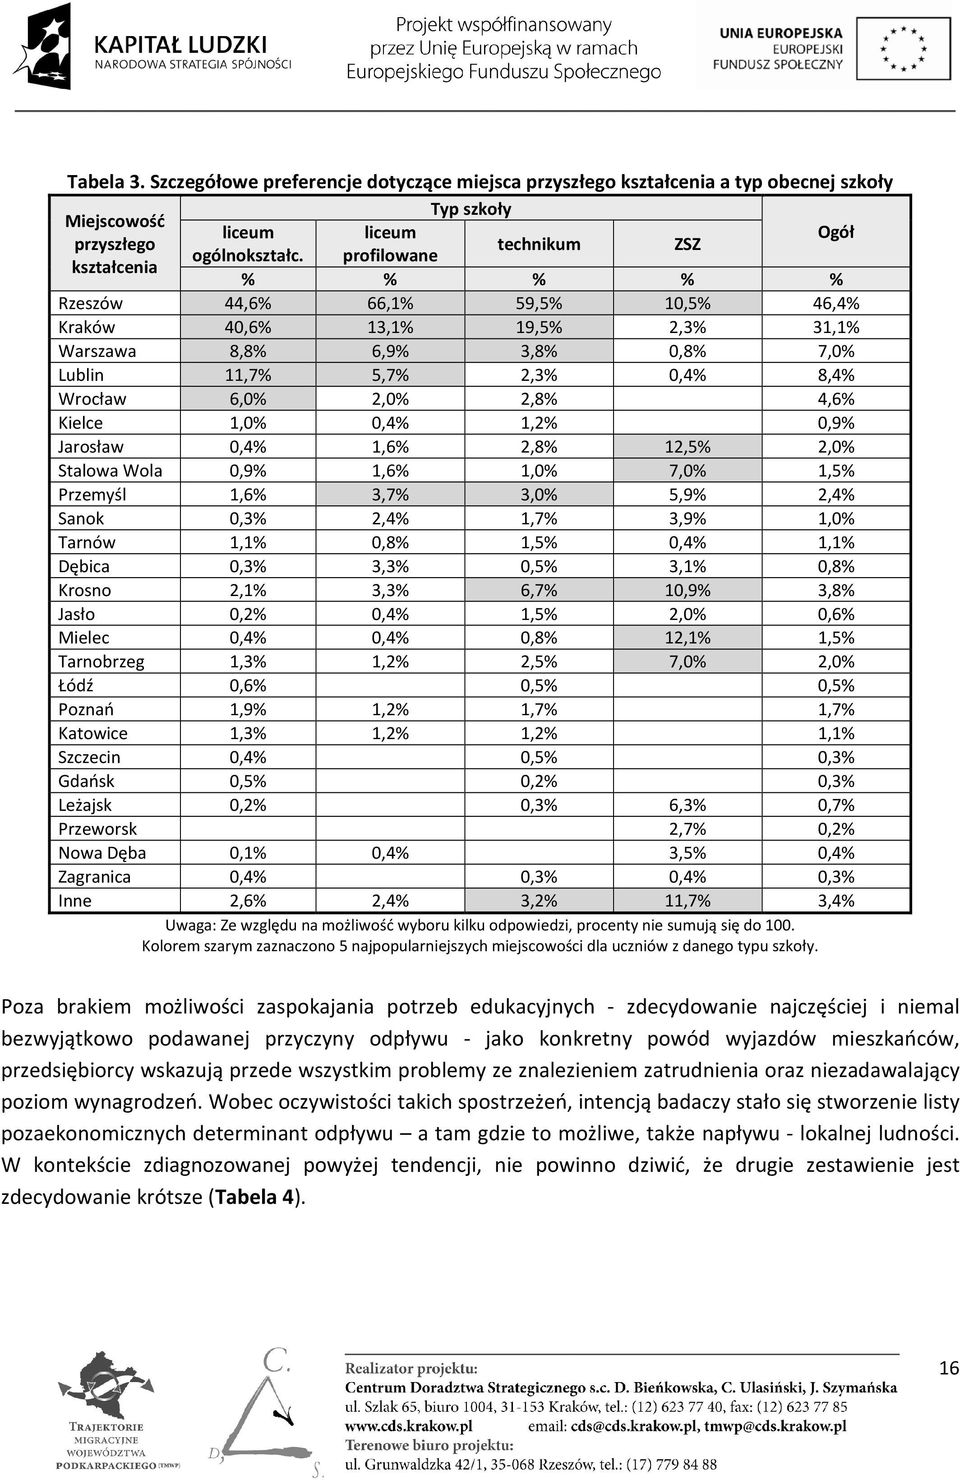 4,6% Kielce 1,0% 0,4% 1,2% 0,9% Jarosław 0,4% 1,6% 2,8% 12,5% 2,0% Stalowa Wola 0,9% 1,6% 1,0% 7,0% 1,5% Przemyśl 1,6% 3,7% 3,0% 5,9% 2,4% Sanok 0,3% 2,4% 1,7% 3,9% 1,0% Tarnów 1,1% 0,8% 1,5% 0,4%